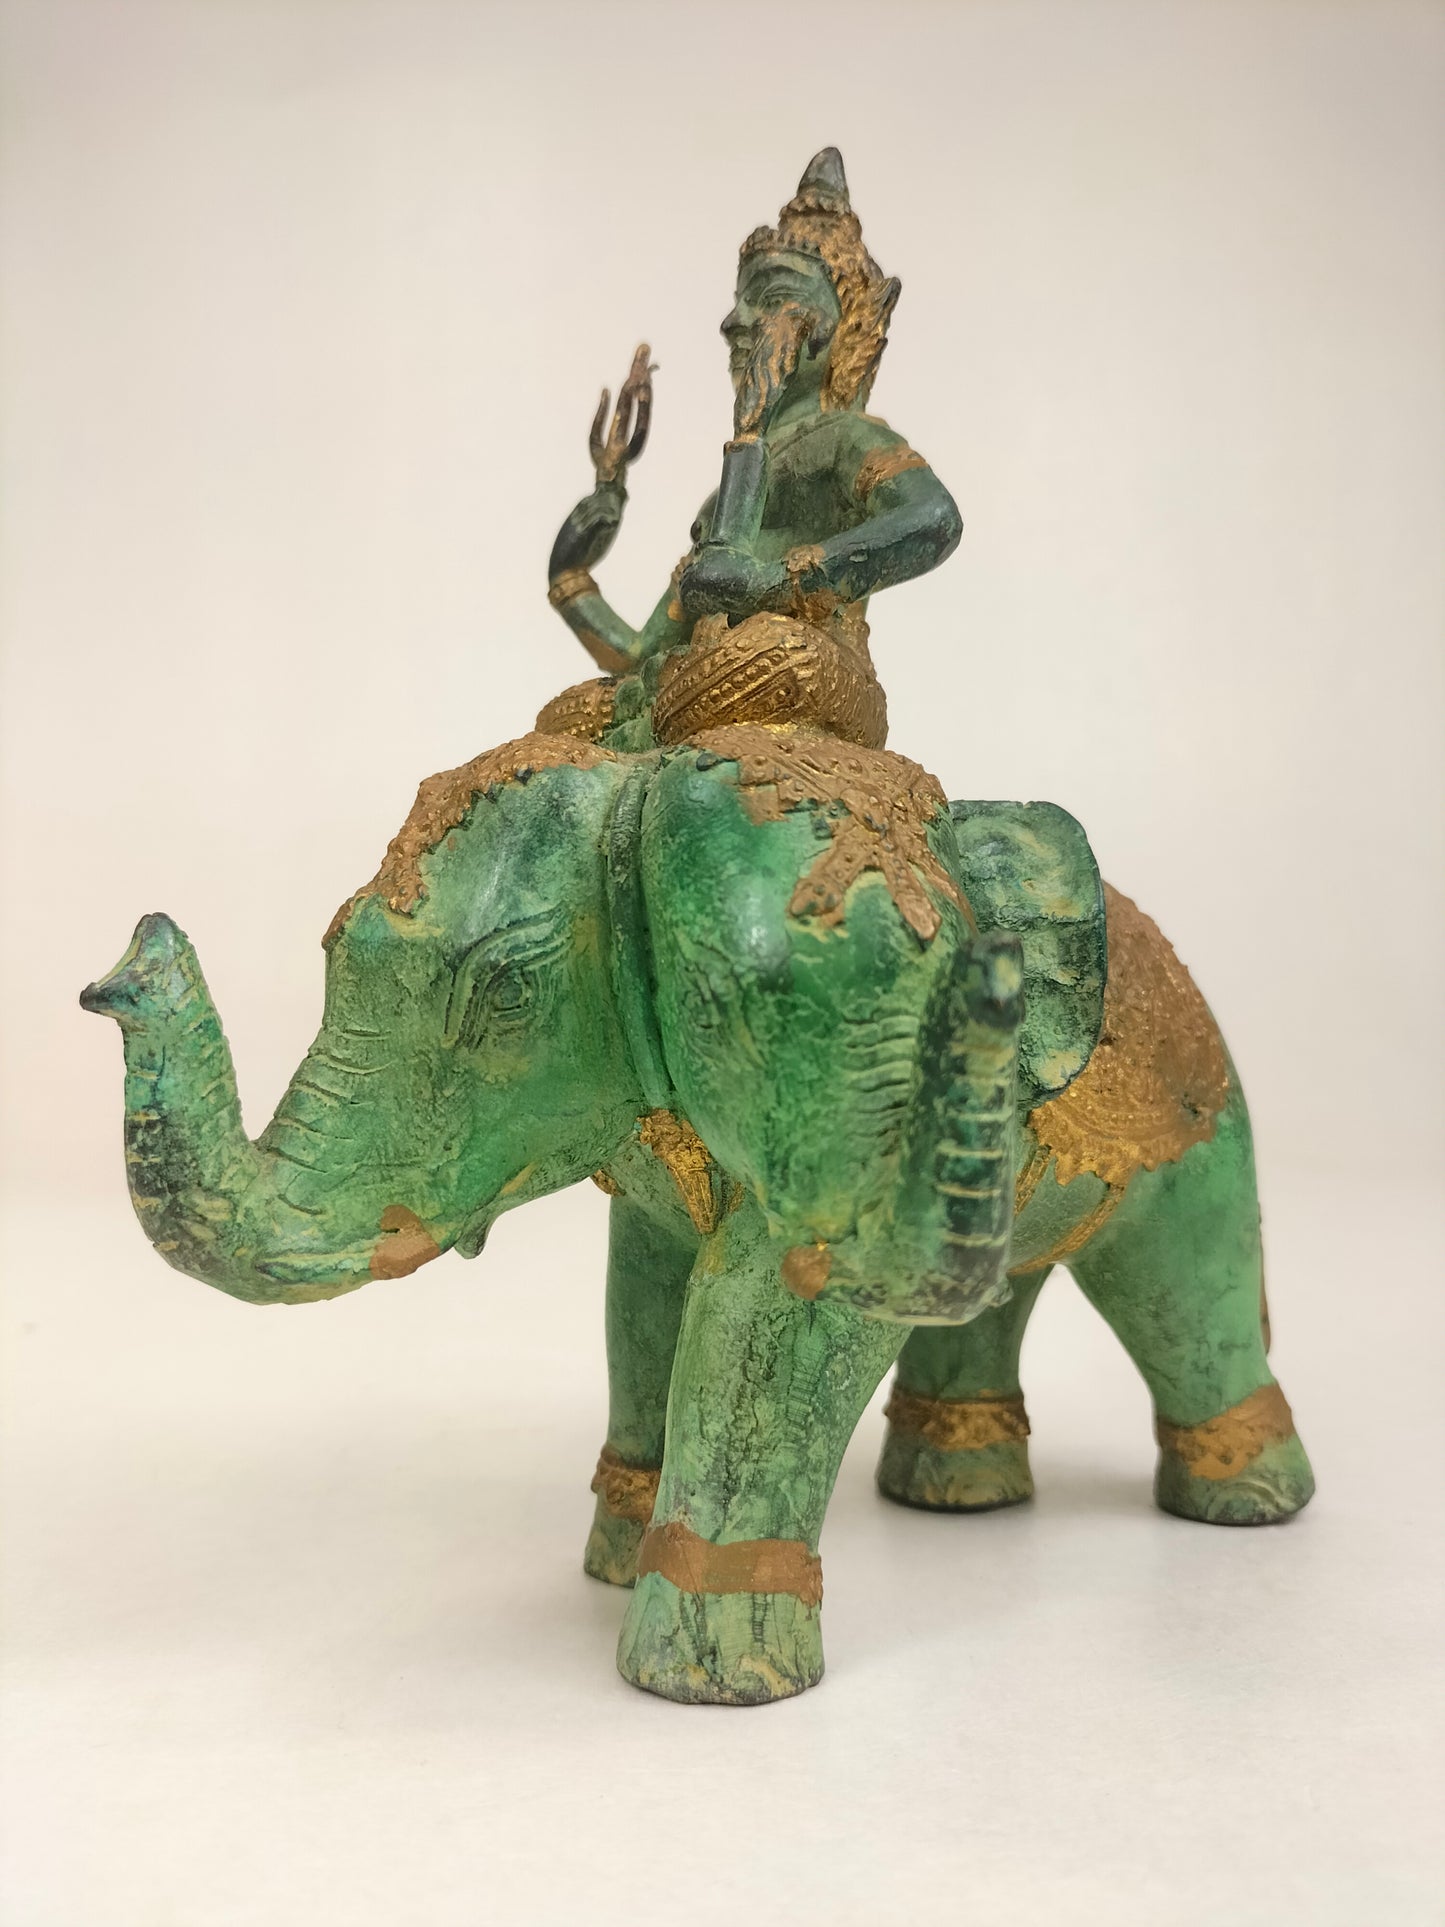 تمثال برونزي مذهّب لحارس المعبد يركب فيلًا // تايلاند - القرن العشرين